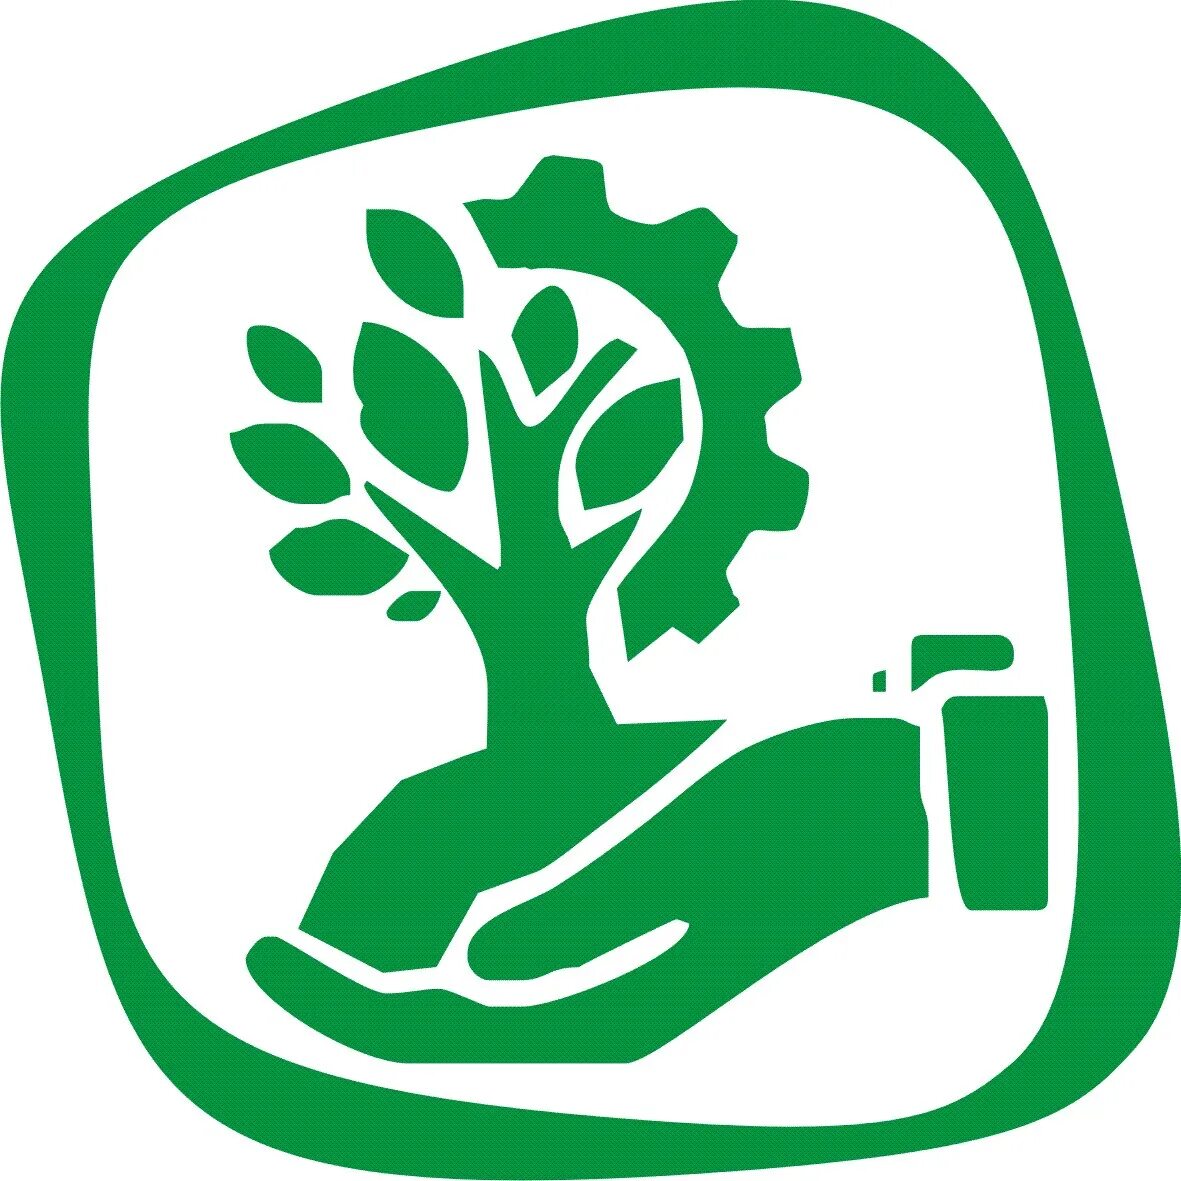 Эмблема экологии. Экологический логотип. Значок эколога. Природопользование символ. Школа природных ресурсов